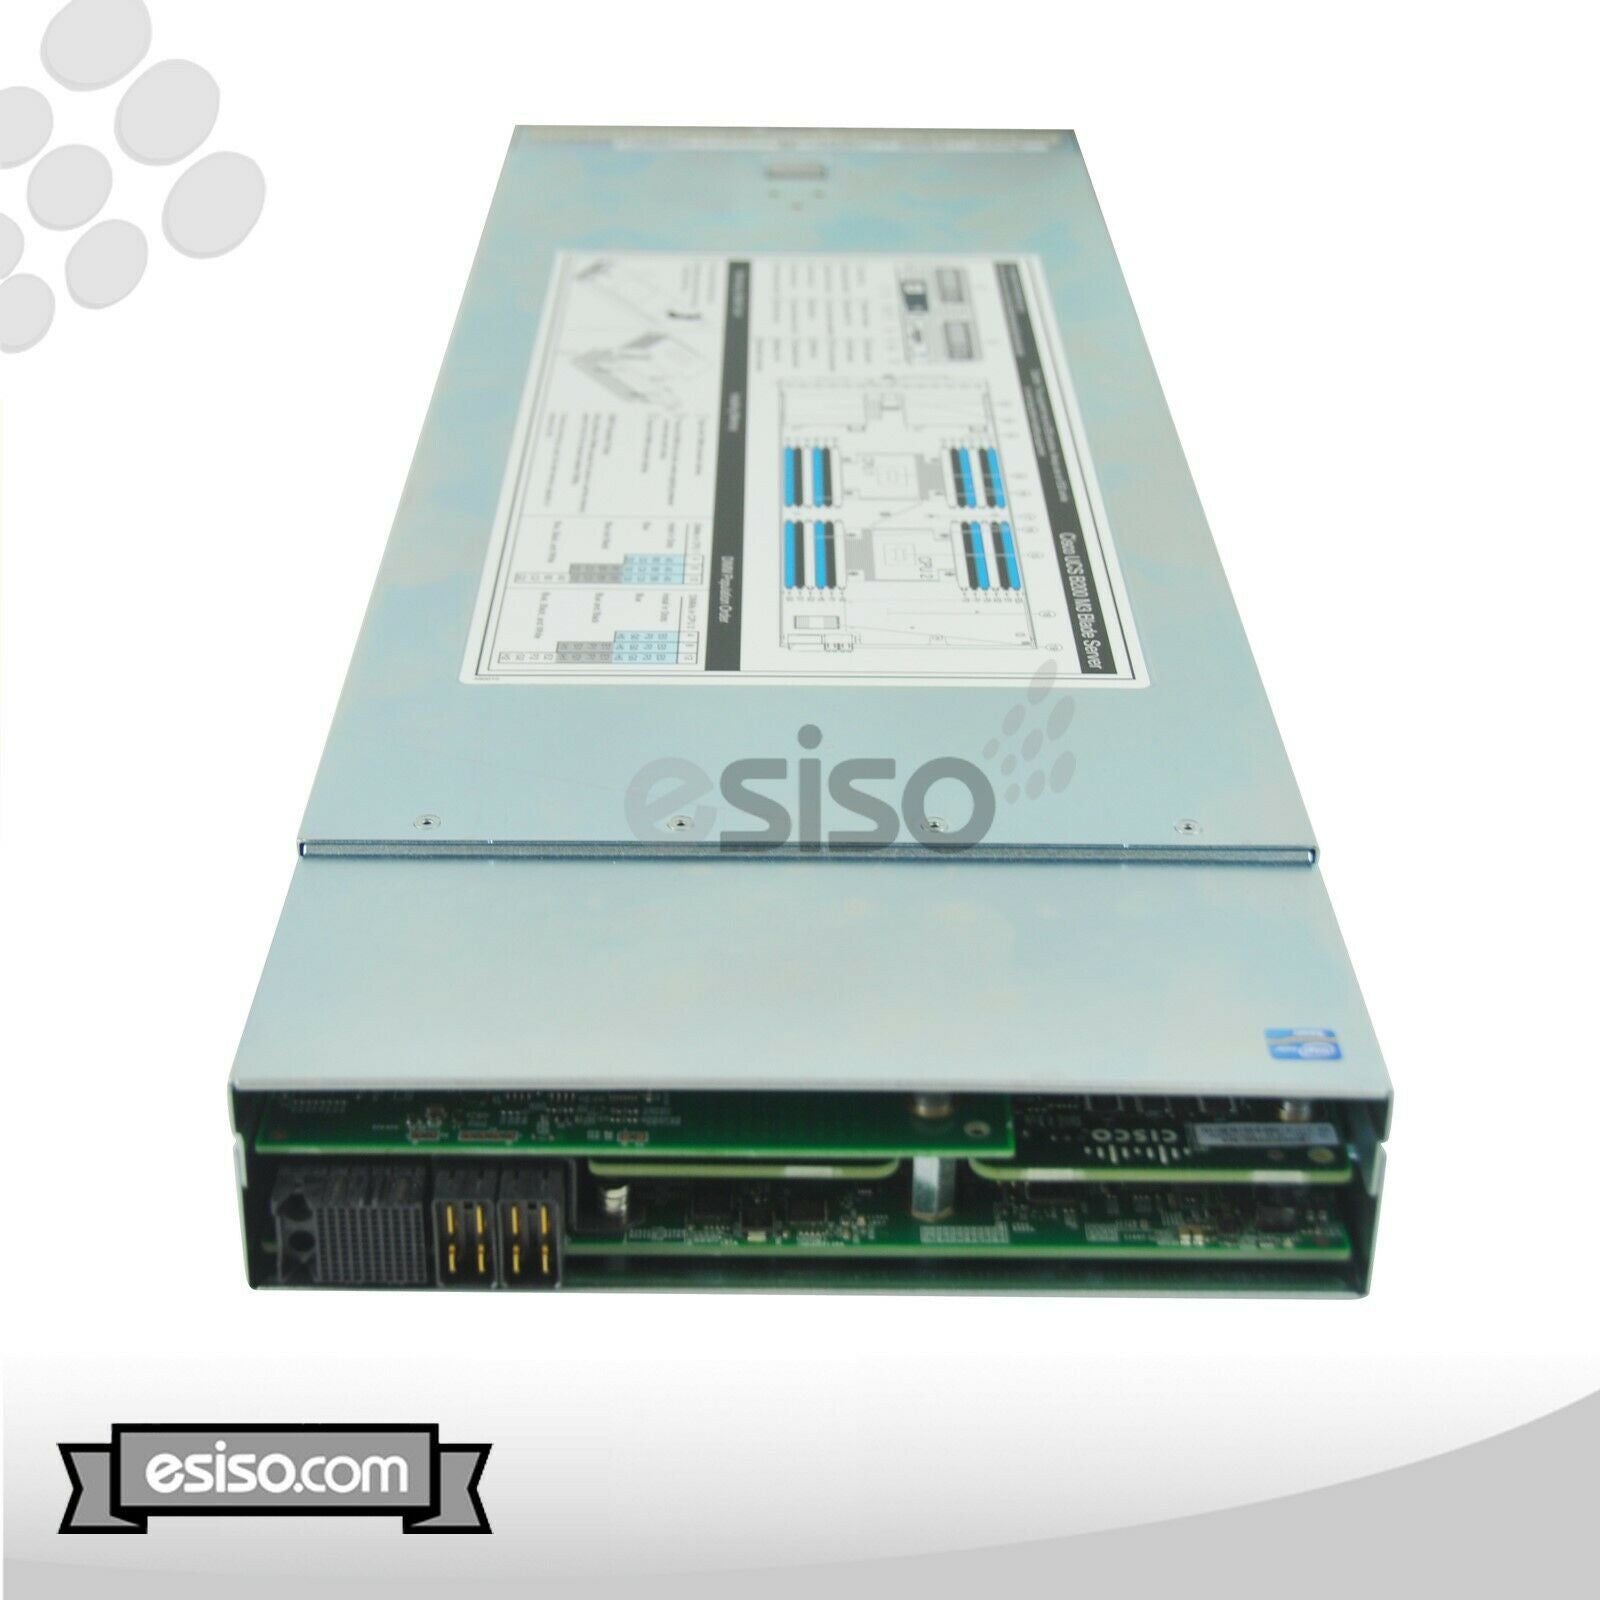 CISCO UCS 5108 CHASSIS 8x B200 M3 2x XEON E5-2609 2.4GHz 16GB RAM 2x 300GB SAS